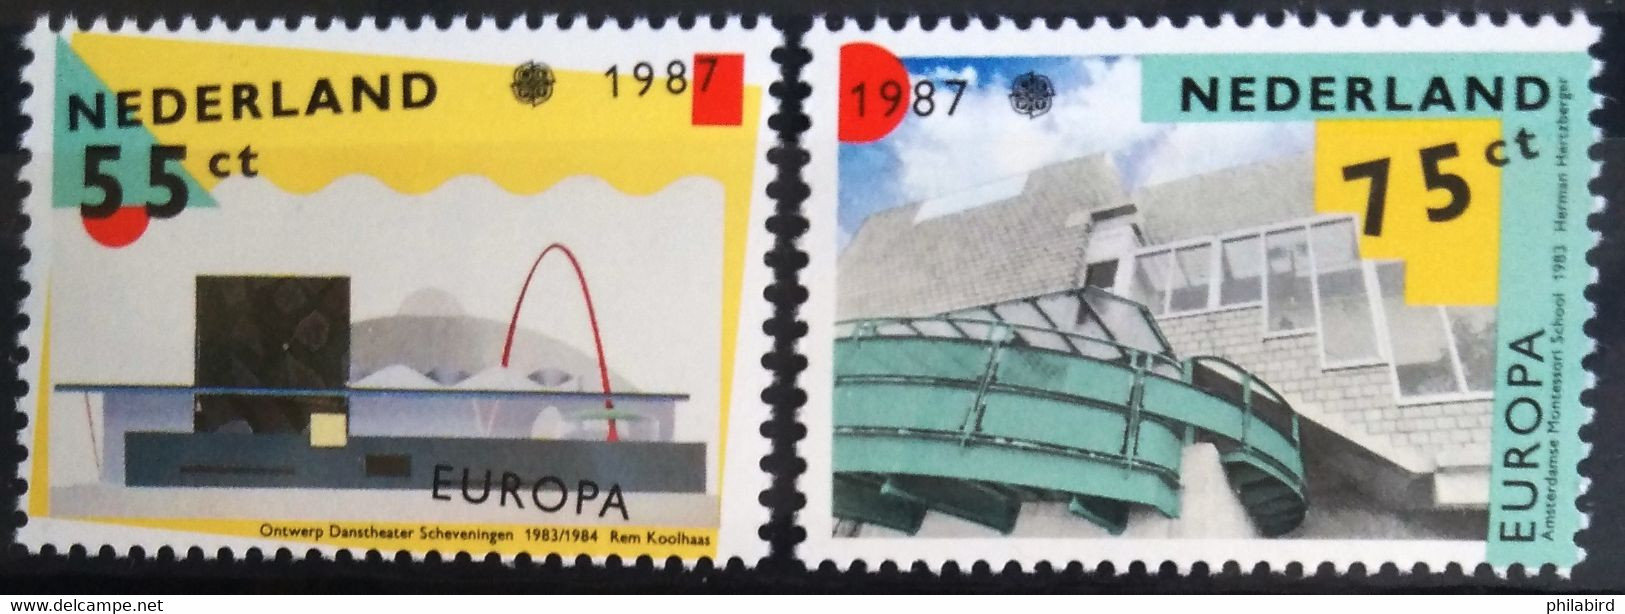 EUROPA 1987 - PAYS-BAS                 N° 1288/1289                        NEUF** - 1987